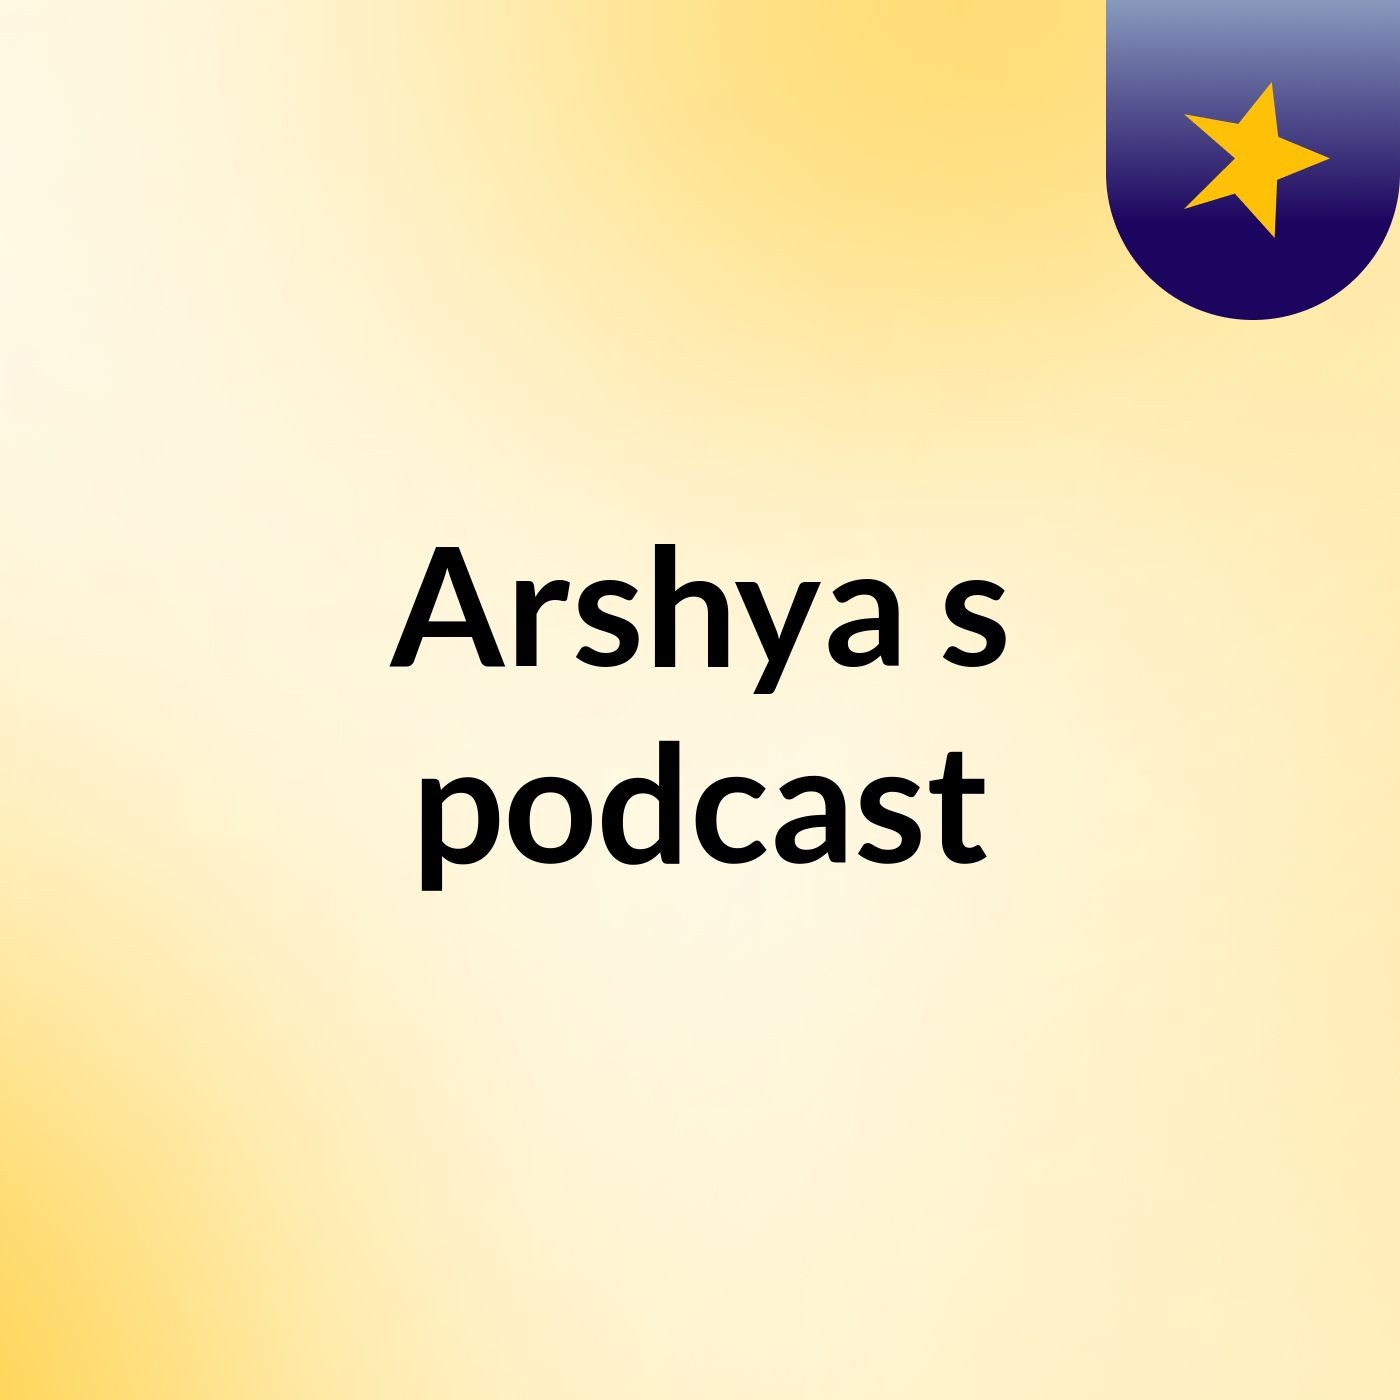 Arshya's podcast